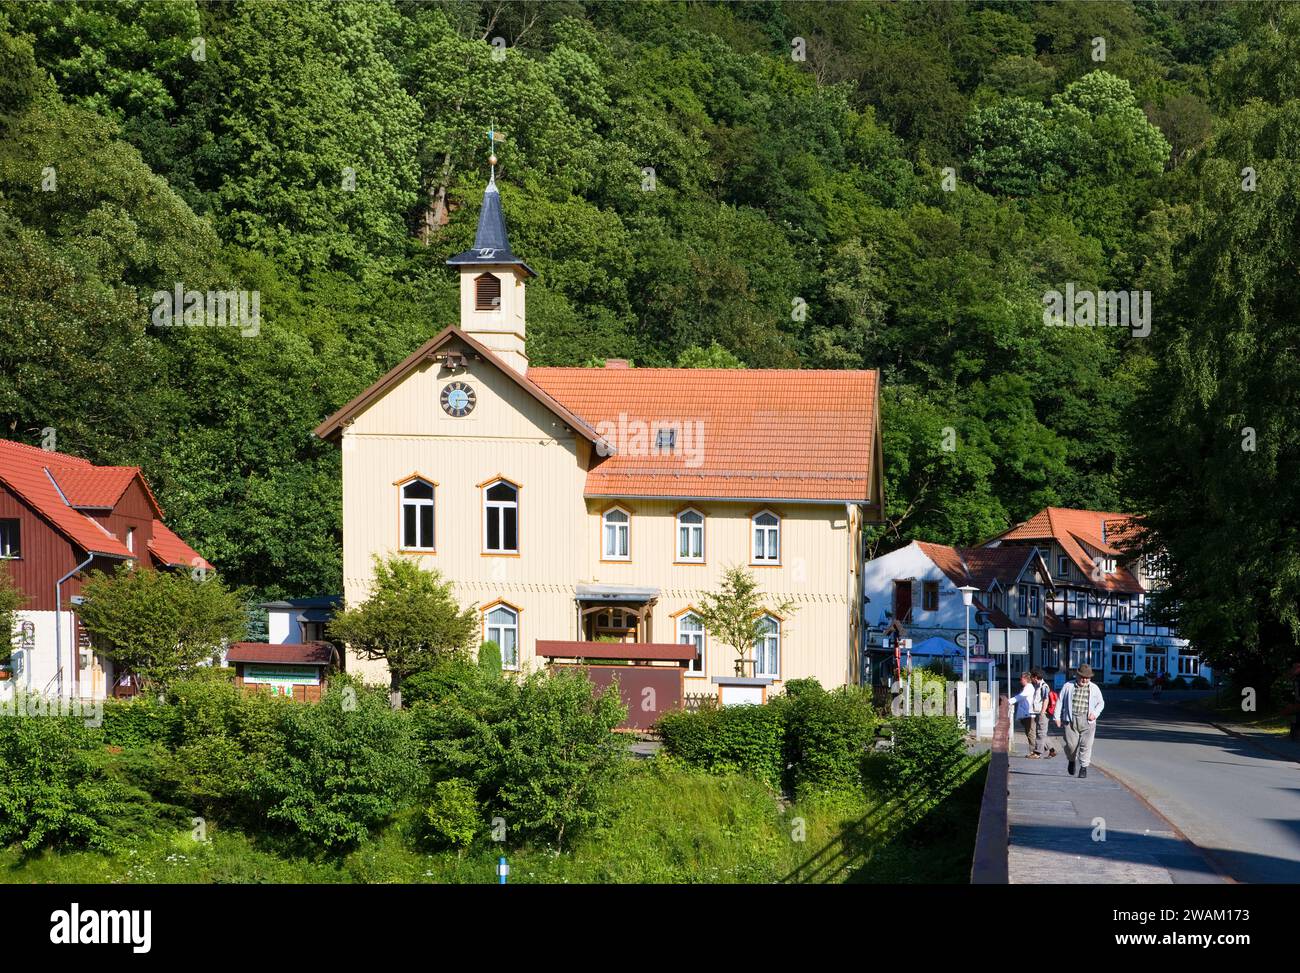 Village de Treseburg, vallée de Bodetal, district de Harz, Saxe-Anhalt, Allemagne, Europe Banque D'Images